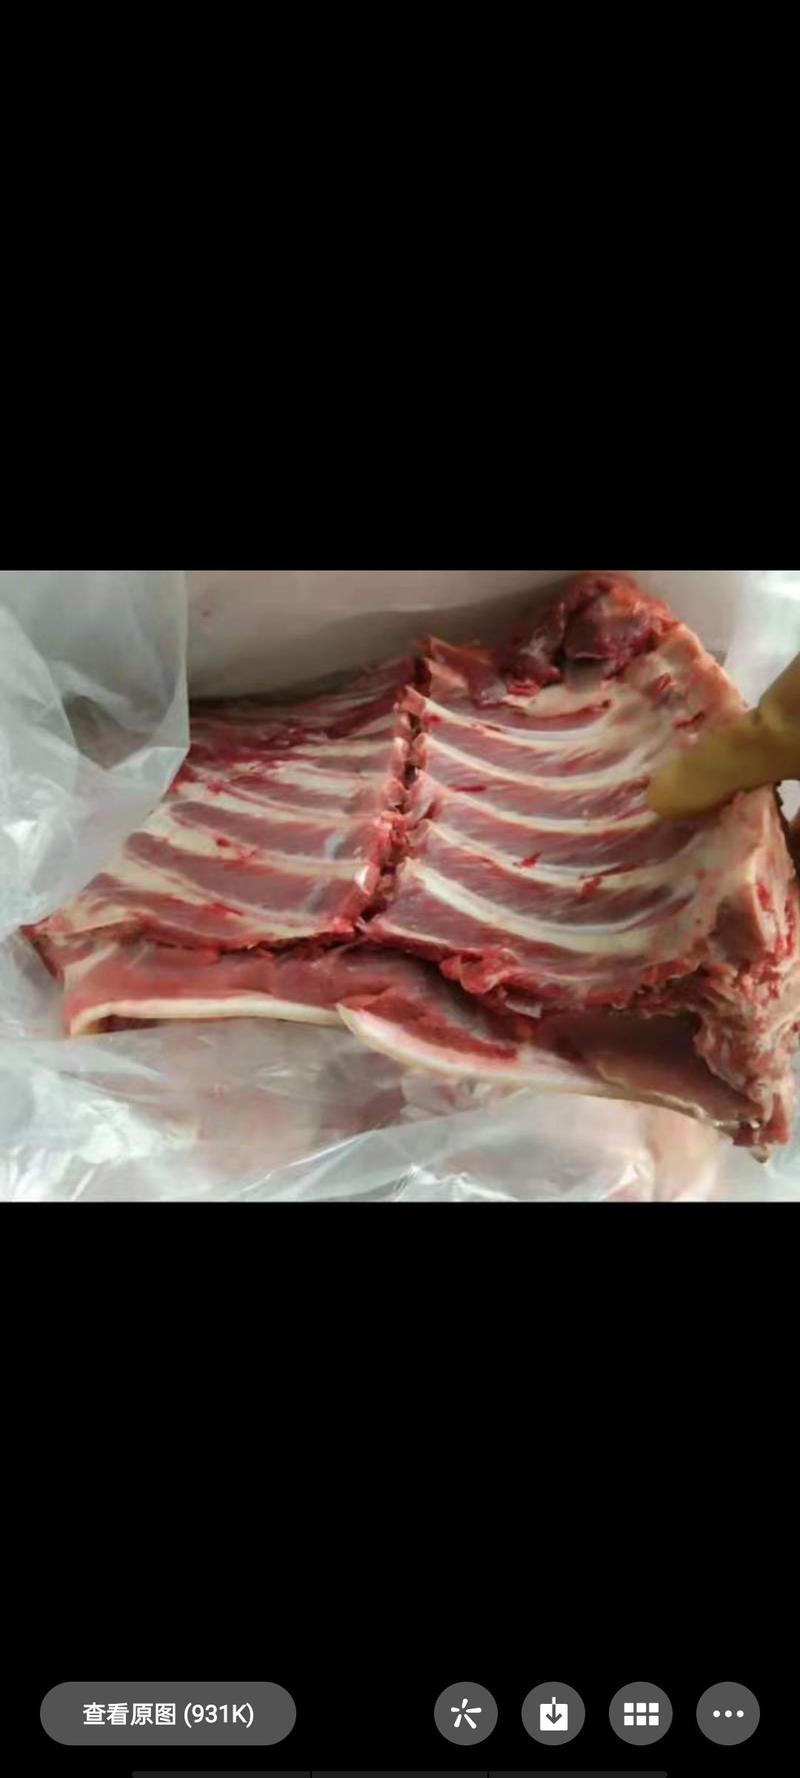 放养山猪肉低脂肪皮厚肉质红润没有肉臊味特供酒楼生鲜